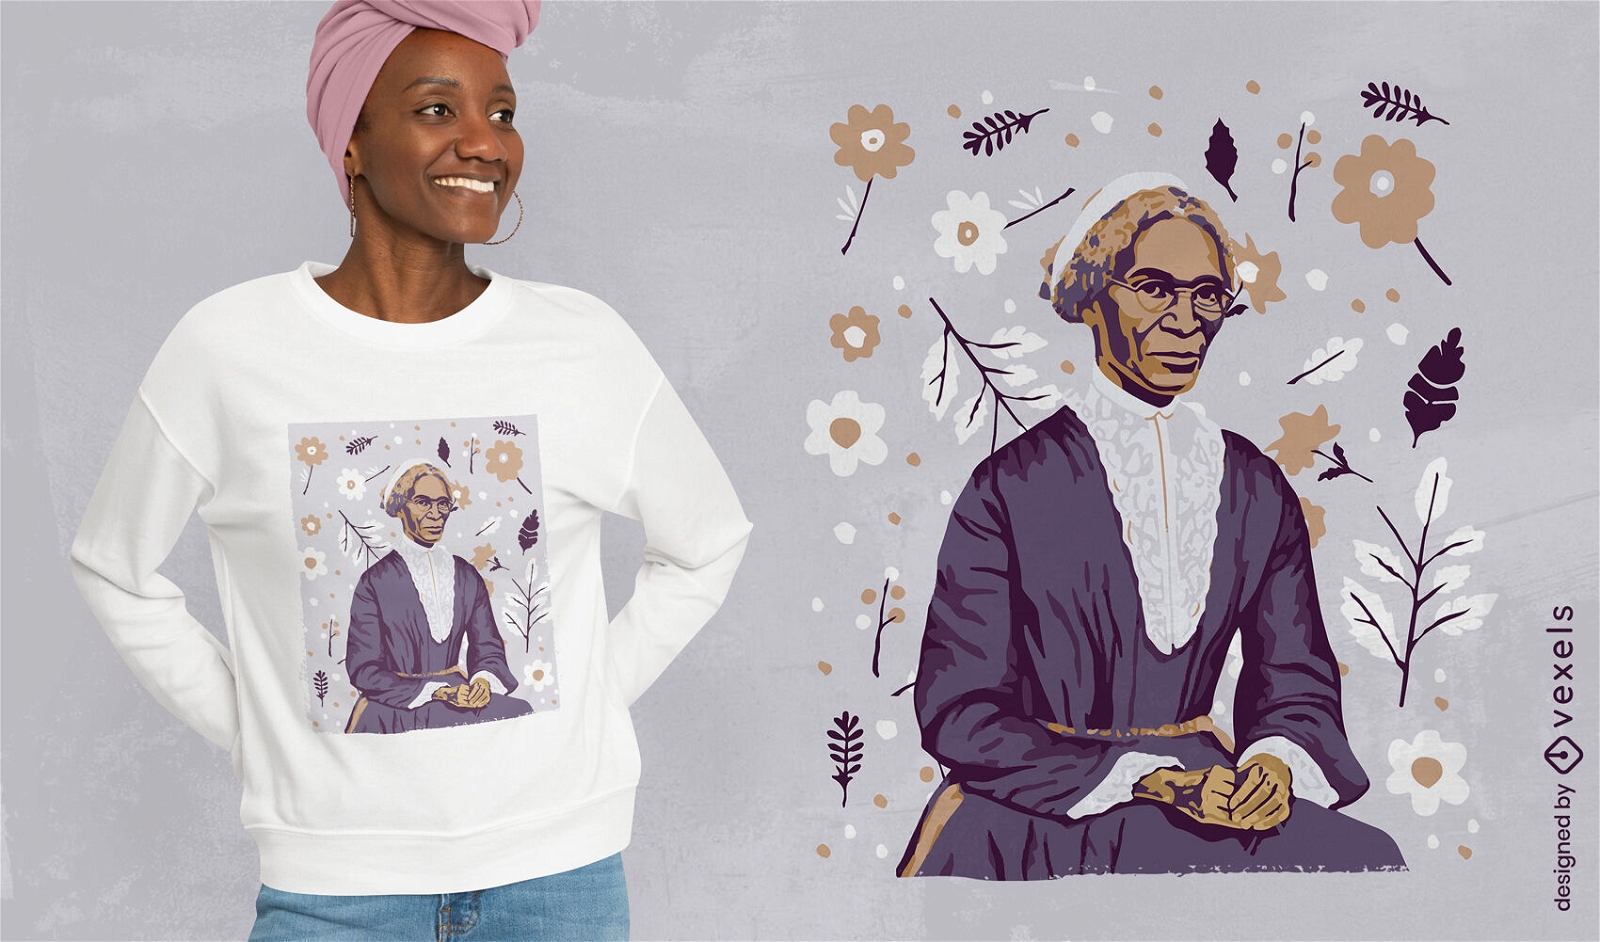 Sojourner Truth inspirational t-shirt design